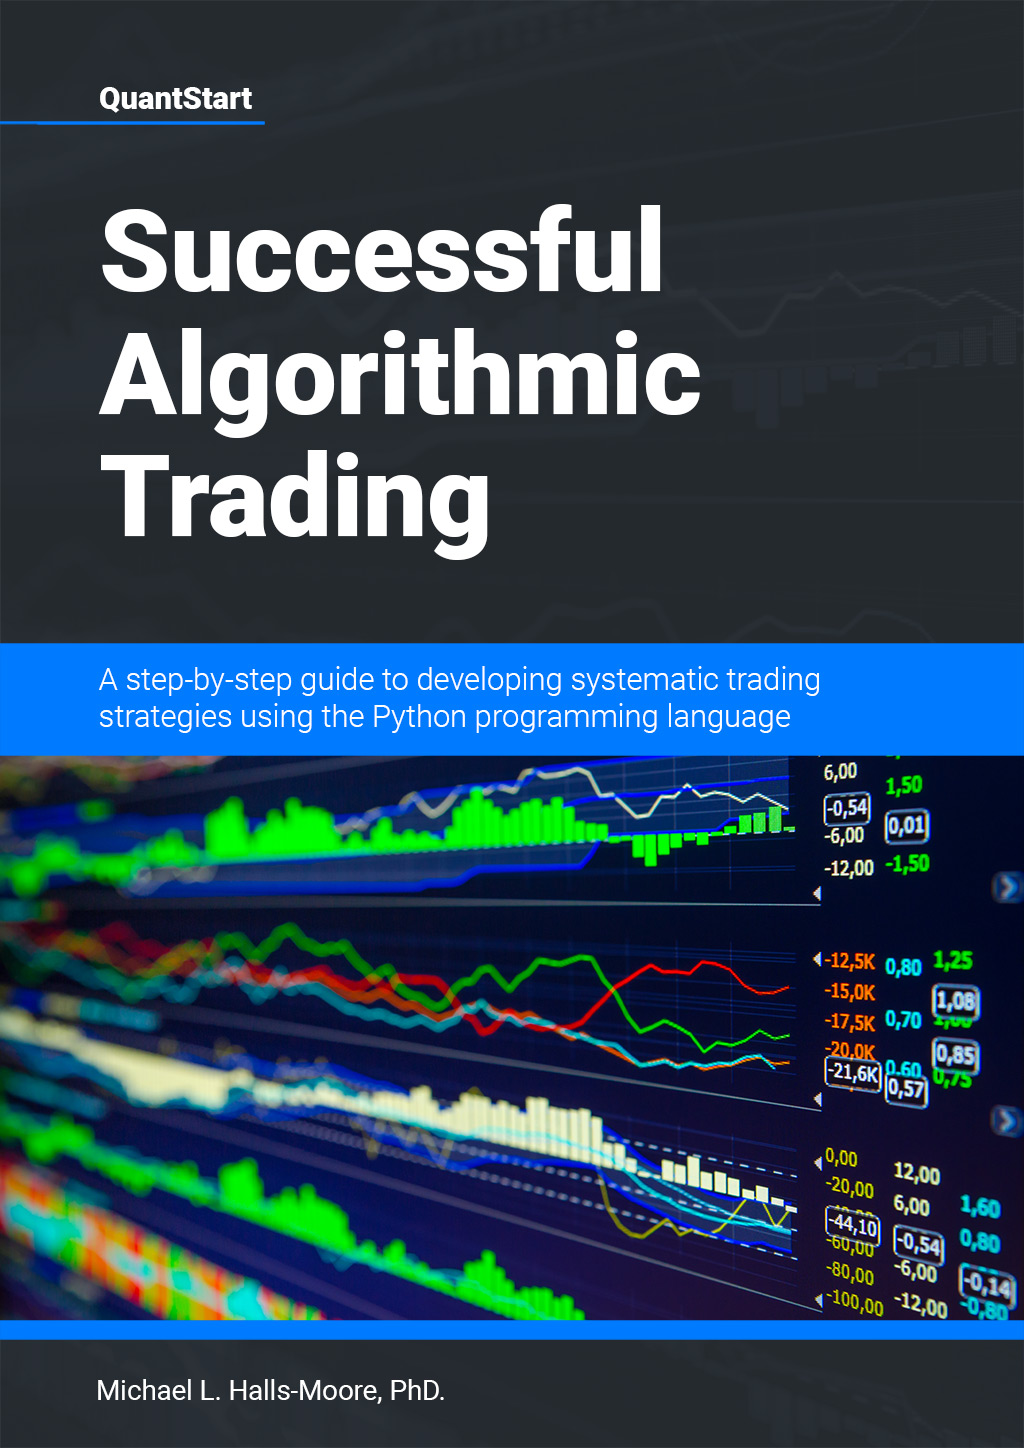 Top 5 Essential Beginner Books for Algorithmic Trading | QuantStart